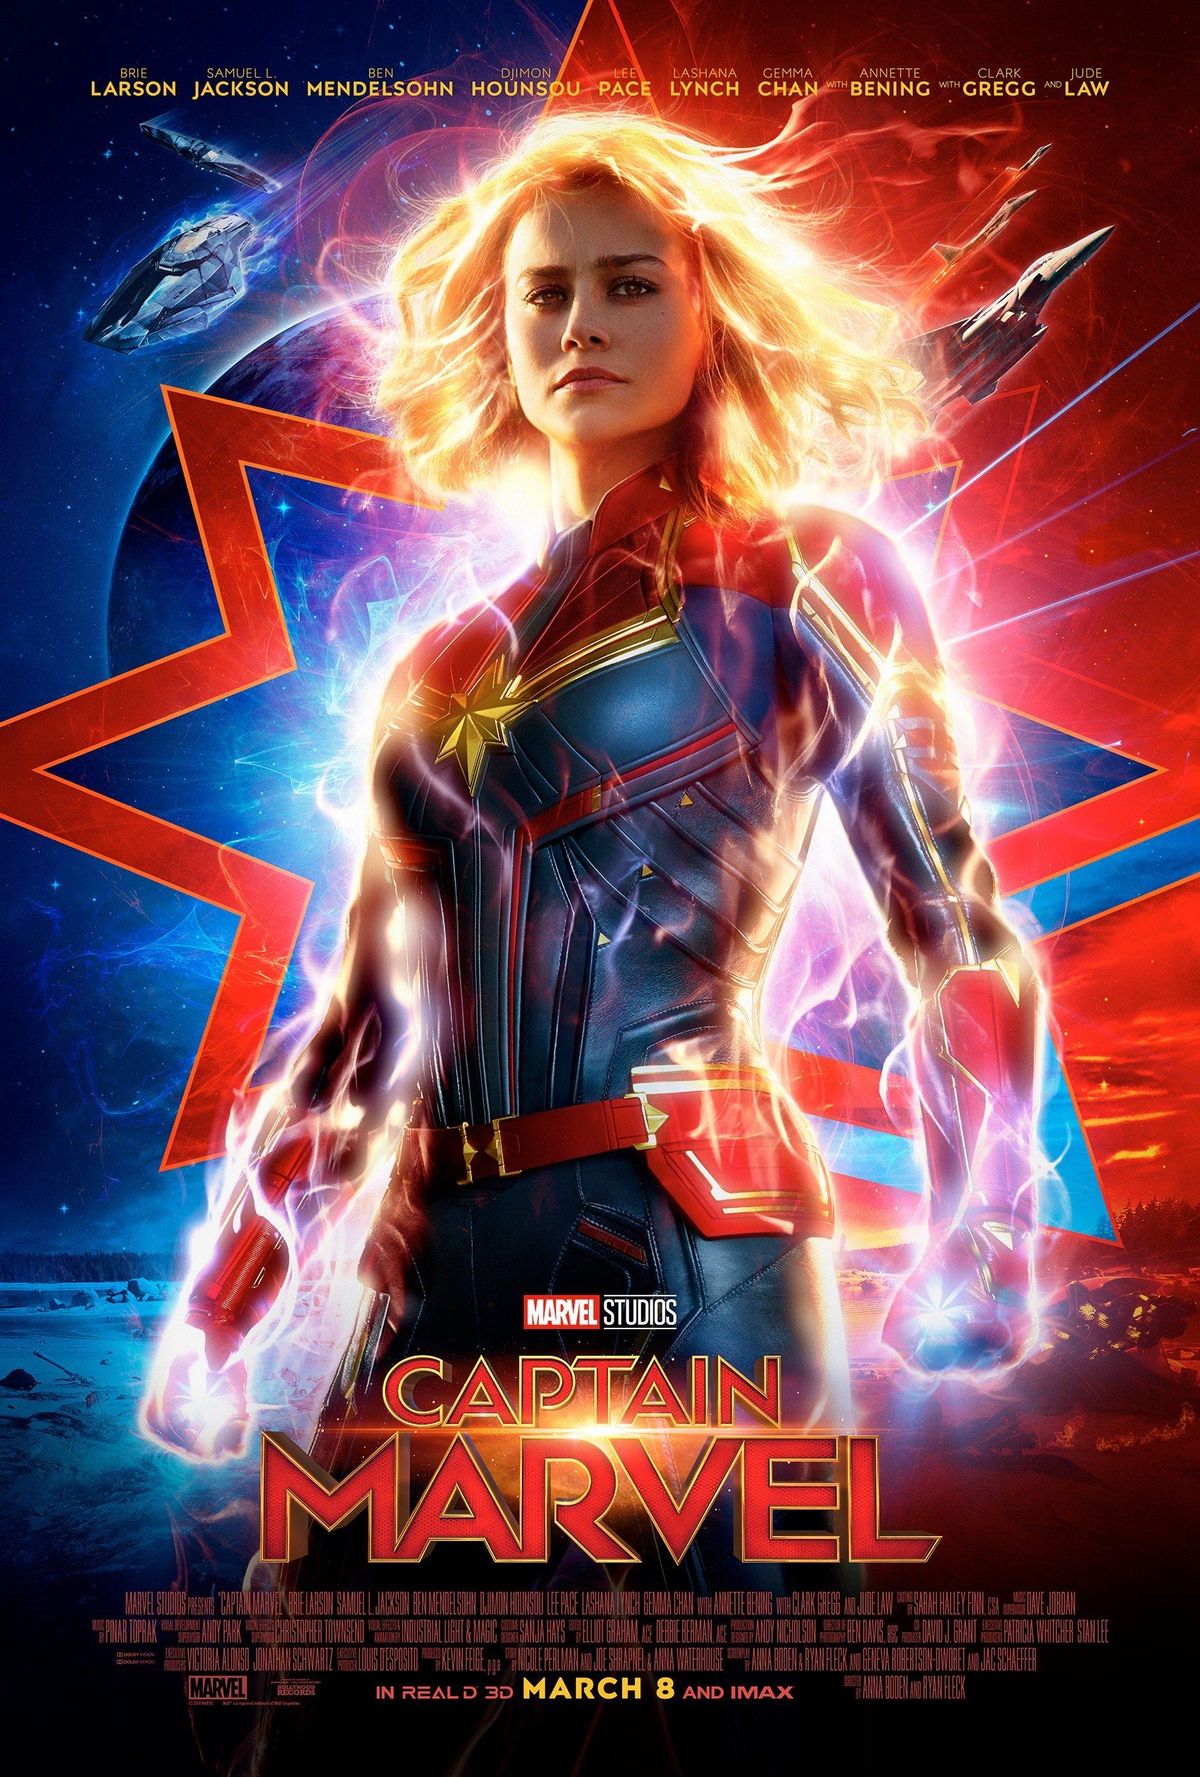 Brie Larson va dir que el capità Marvel 'no estava fet per als homes blancs'?